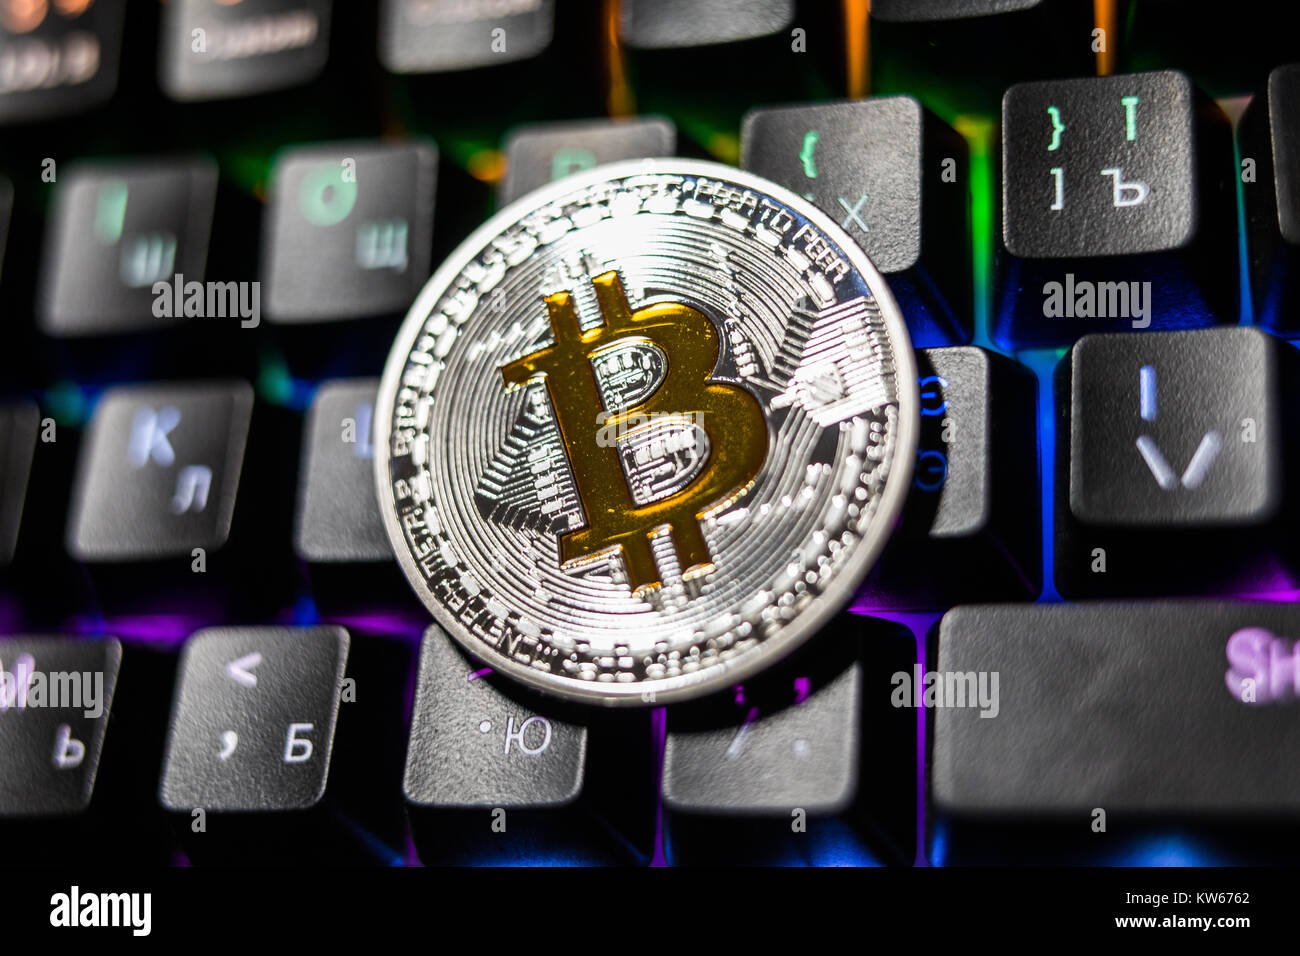 Kryptowährung physisches Silber Bitcoin Münze mit gelben b Zeichen auf der  Tastatur Stockfotografie - Alamy